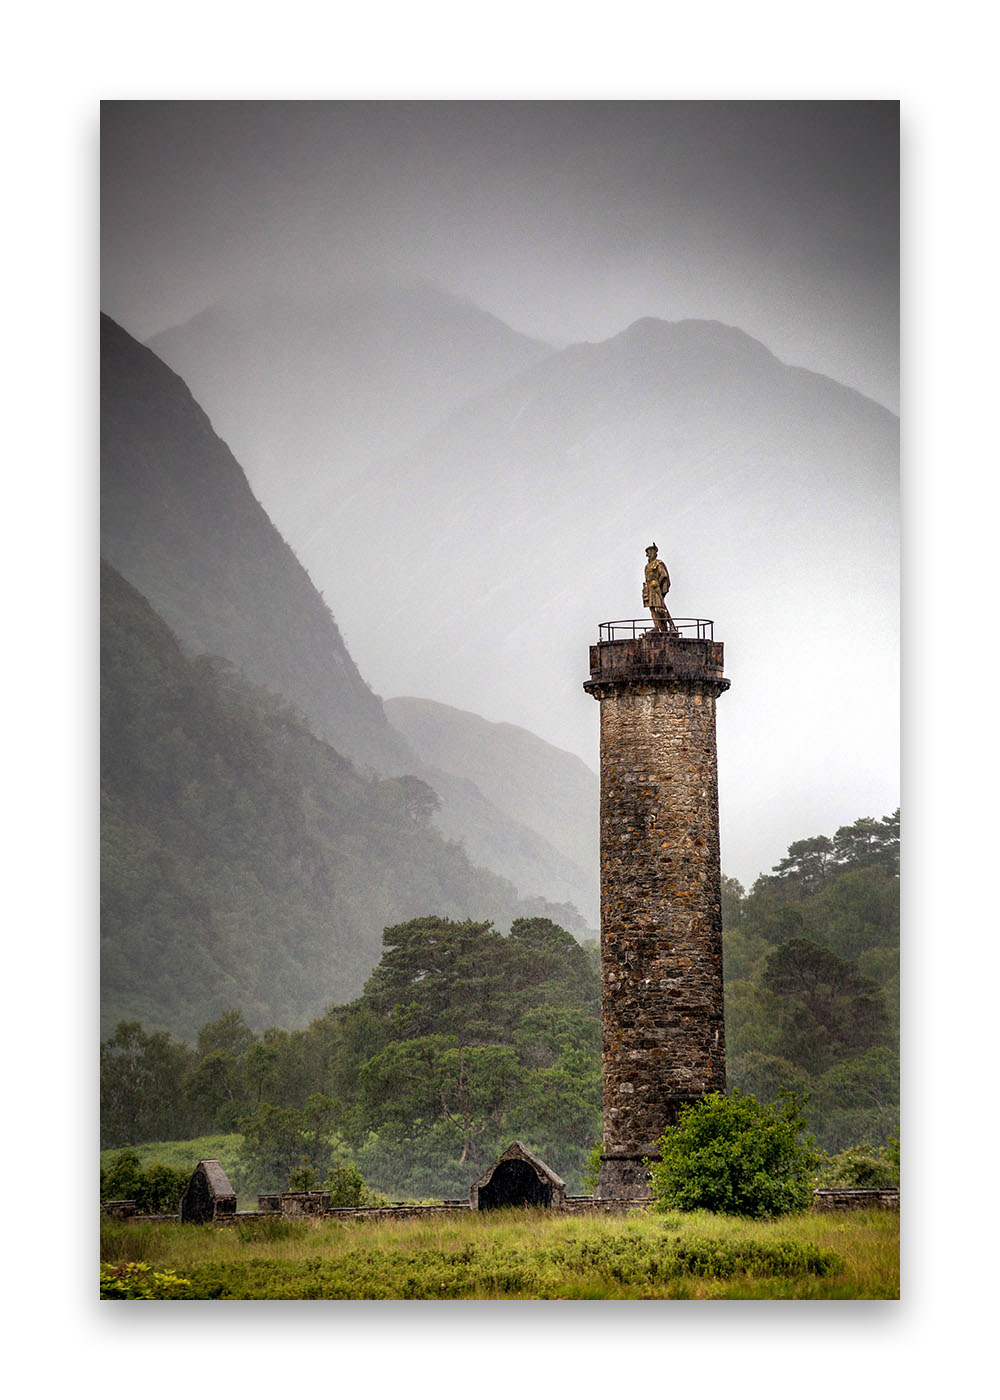 En premier plan la statue de Bonnie Prince Charlie, un héros écossais. Au loin les montagnes écossaises.